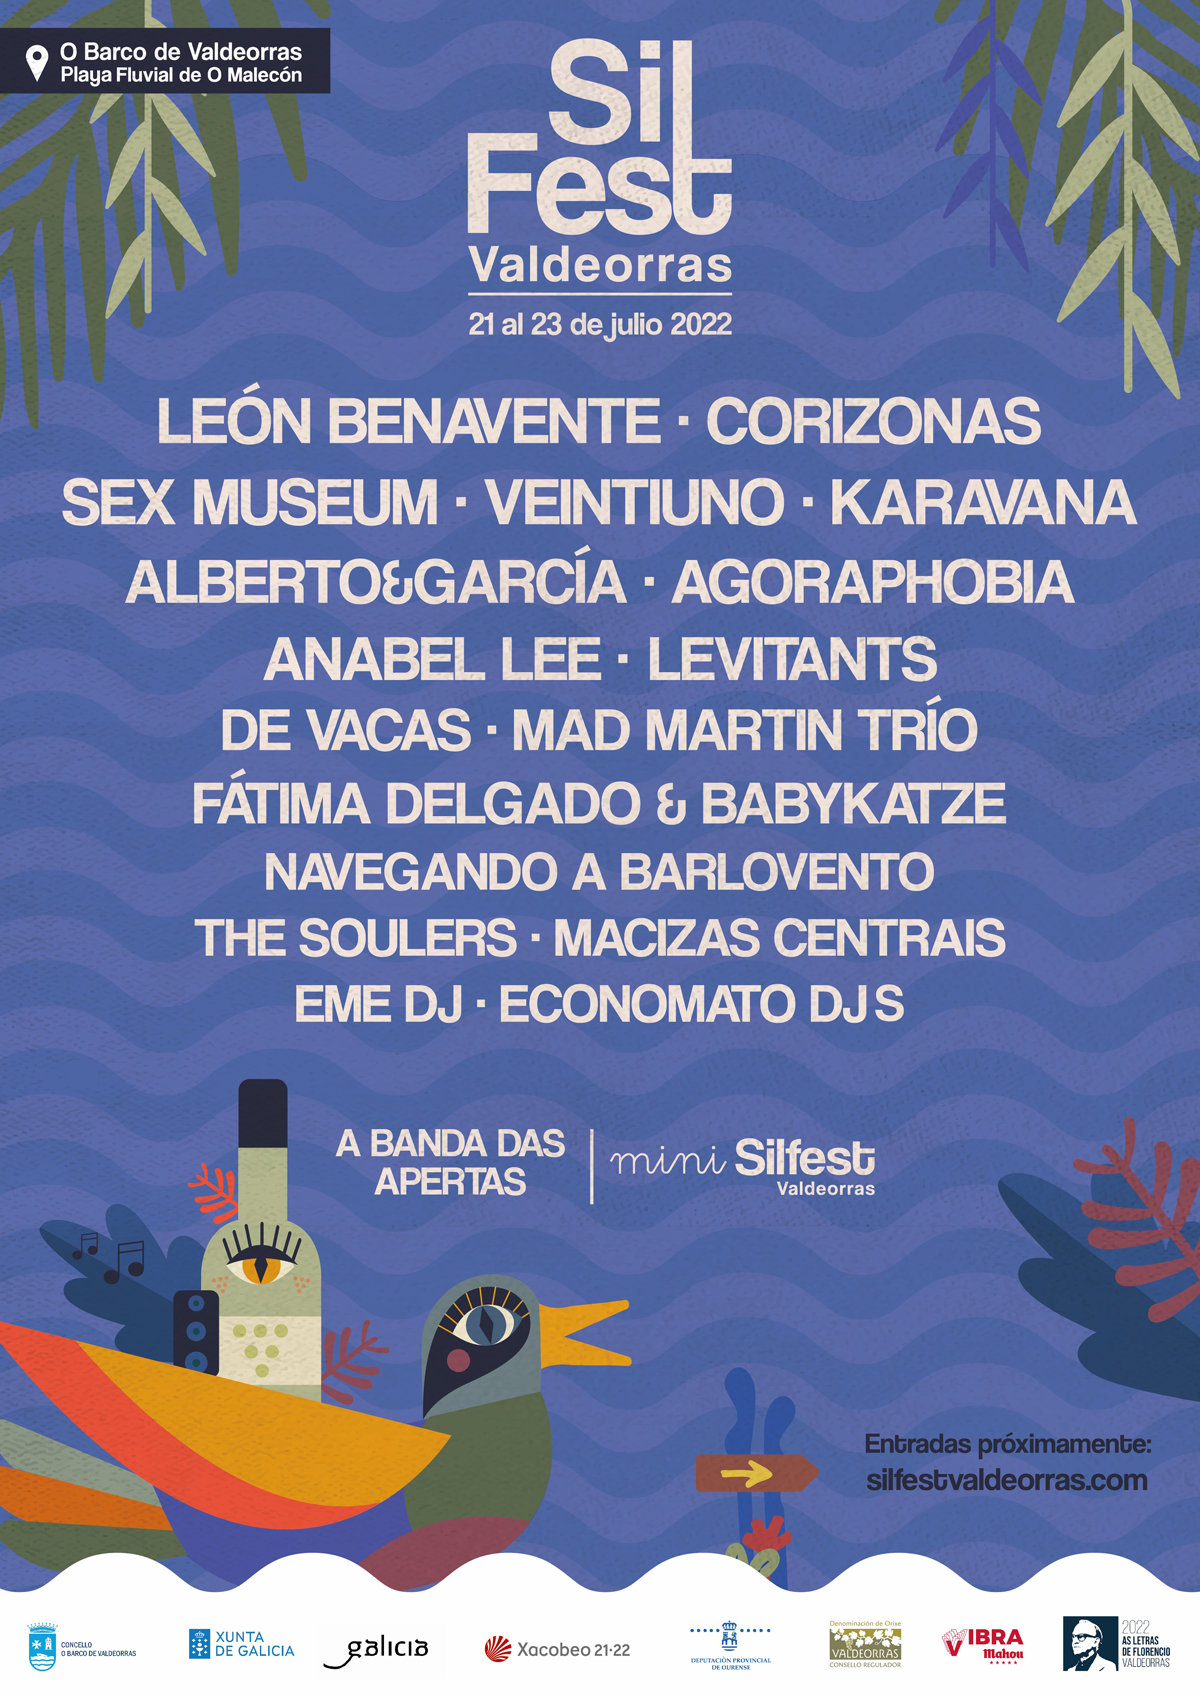 SilFest da a conocer el cartel que se podrá disfrutar en el festival del El Barco de Valdeorras los días 21,22 y 23 de julio 2